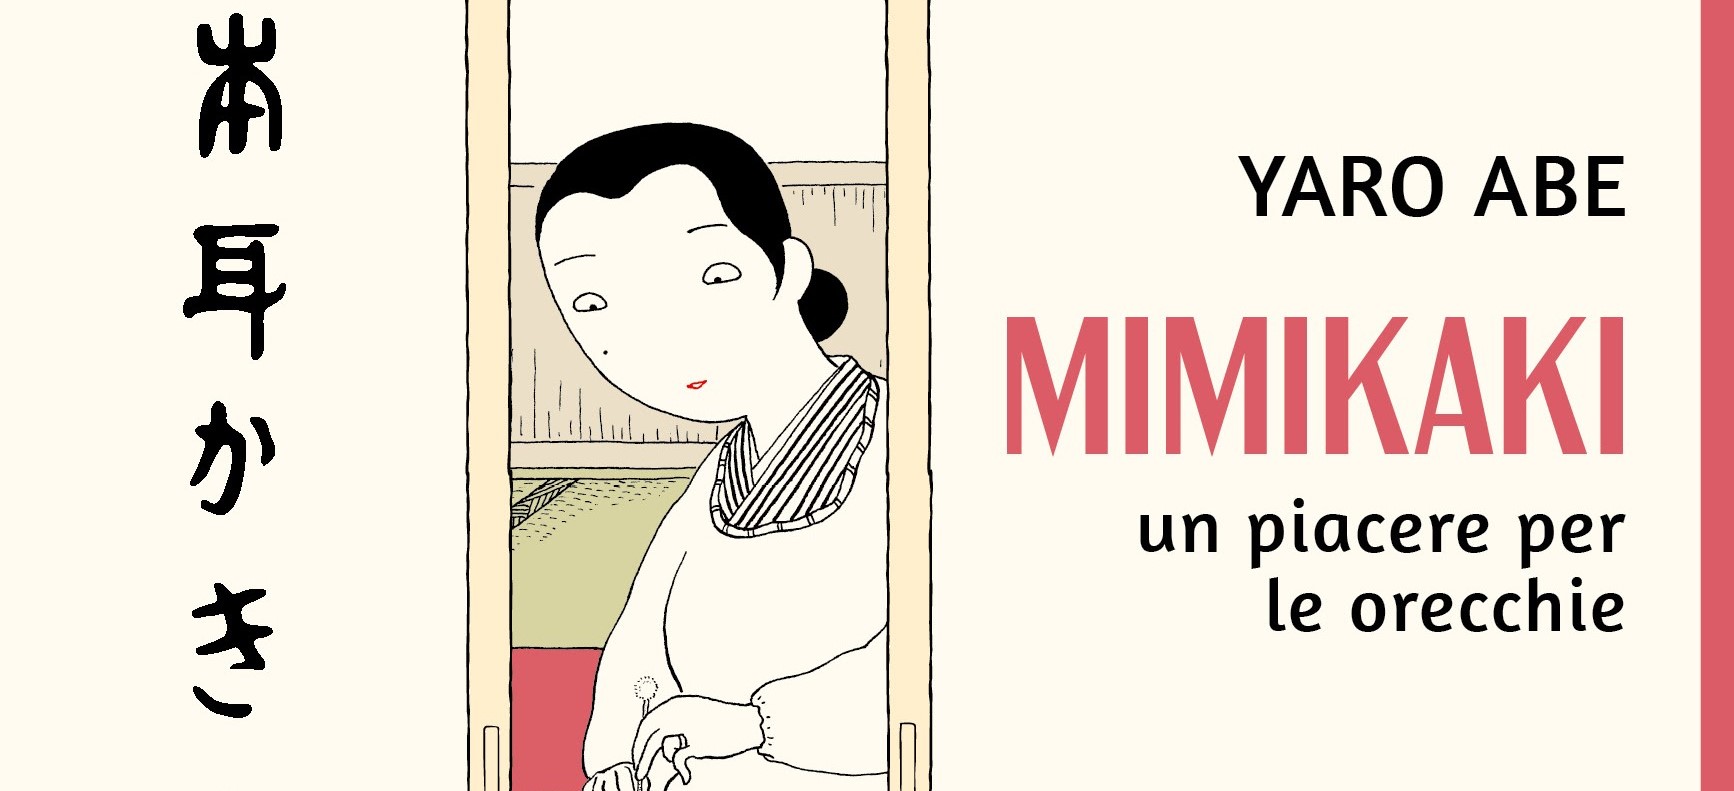 Manga Mimikaki - Un piacere per le orecchie di Yaro Abe in uscita